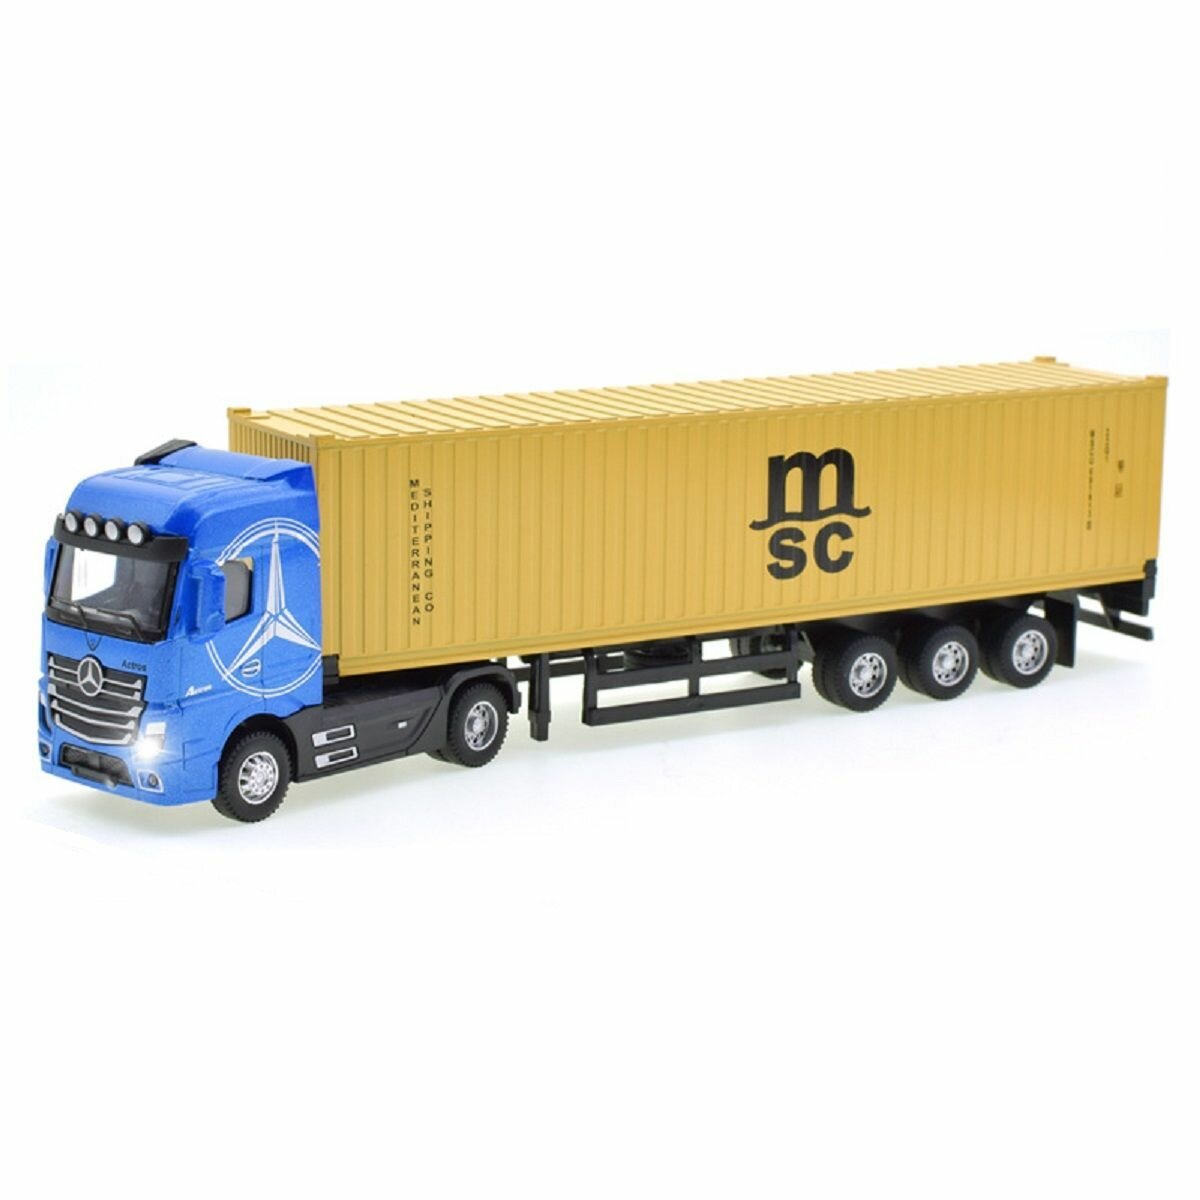 Модель грузовика тягач Мерседес с прицепом-контейнером, инерционная, свет-звук, 1:43, 31 см.